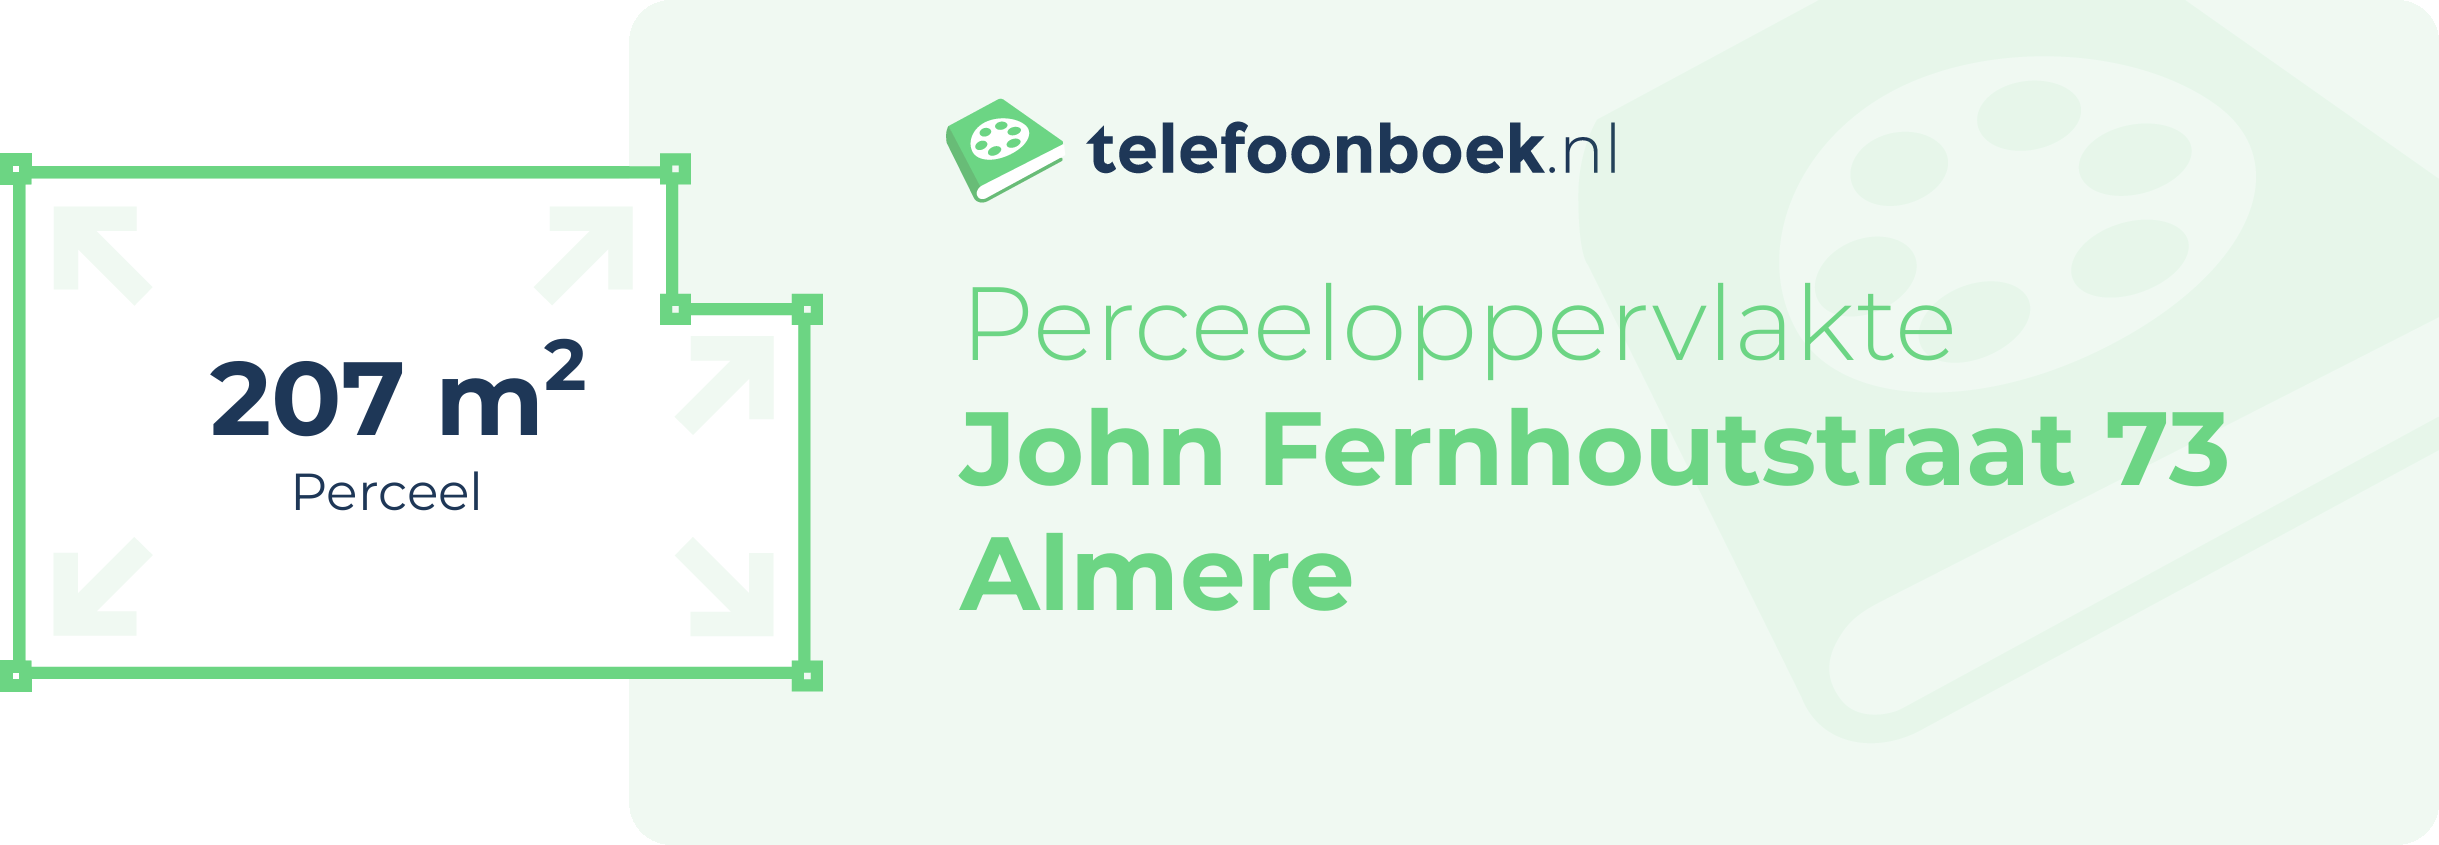 Perceeloppervlakte John Fernhoutstraat 73 Almere